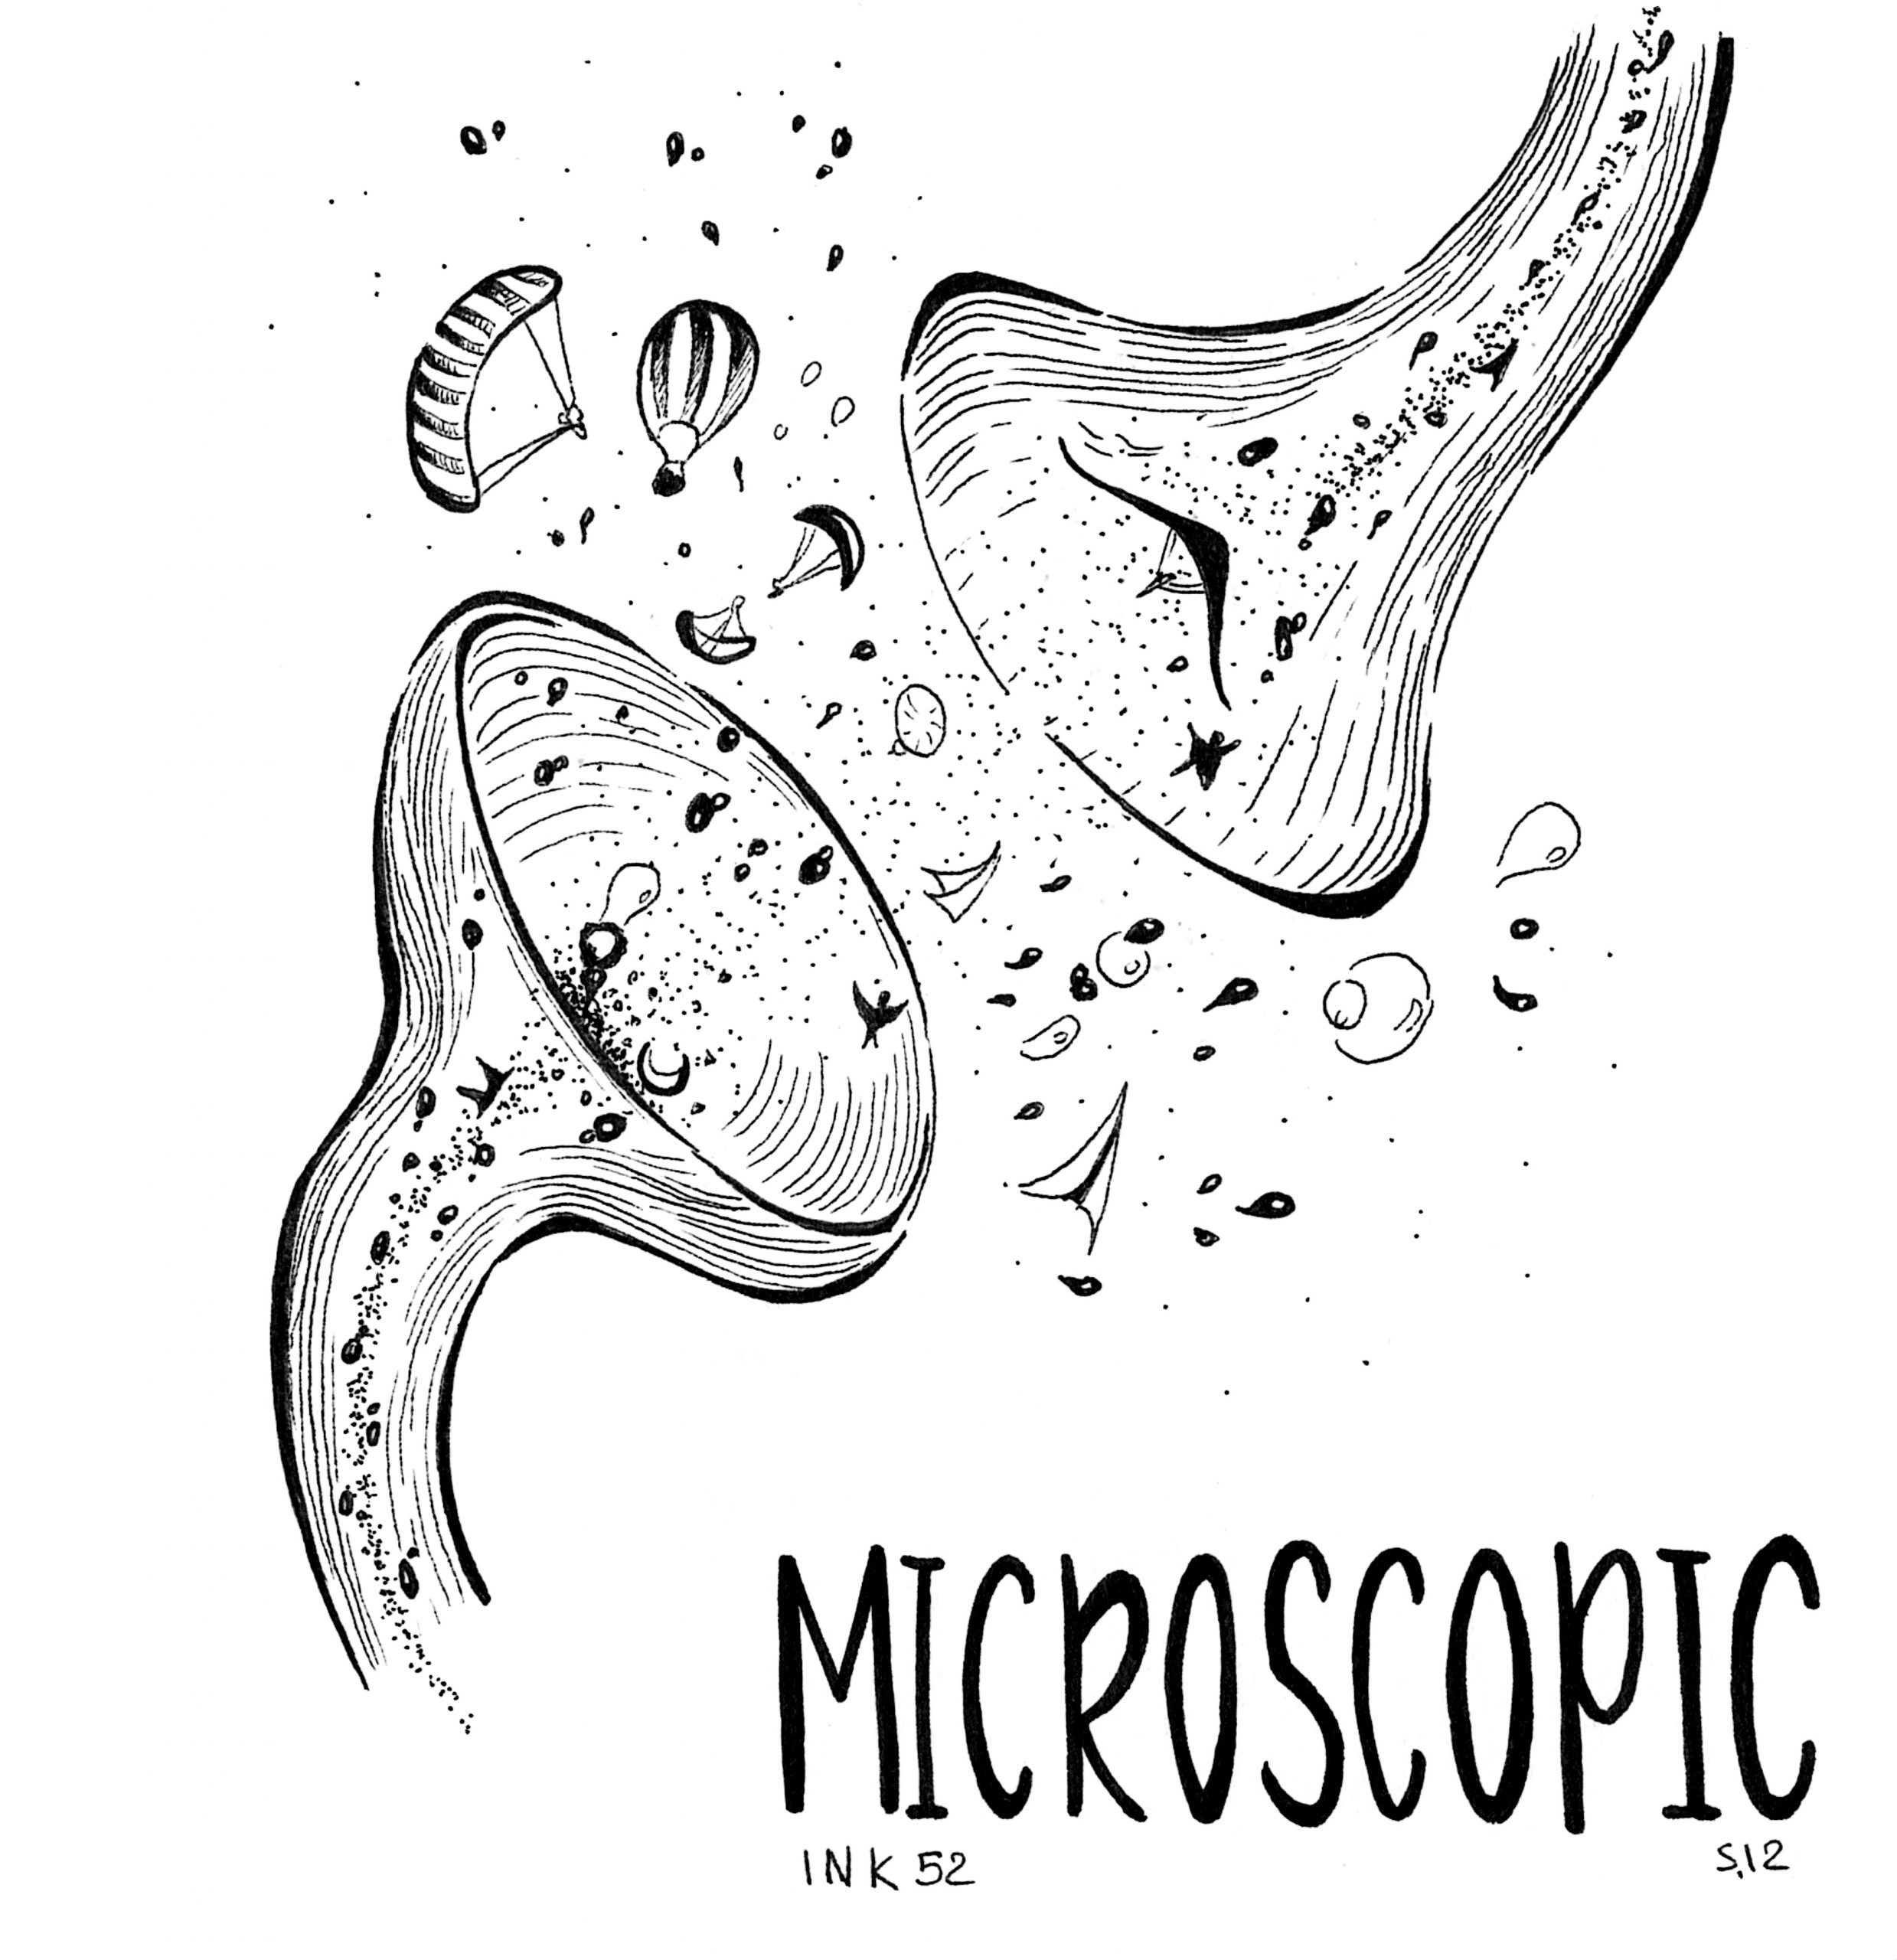 S.12 MICROSCOPIC